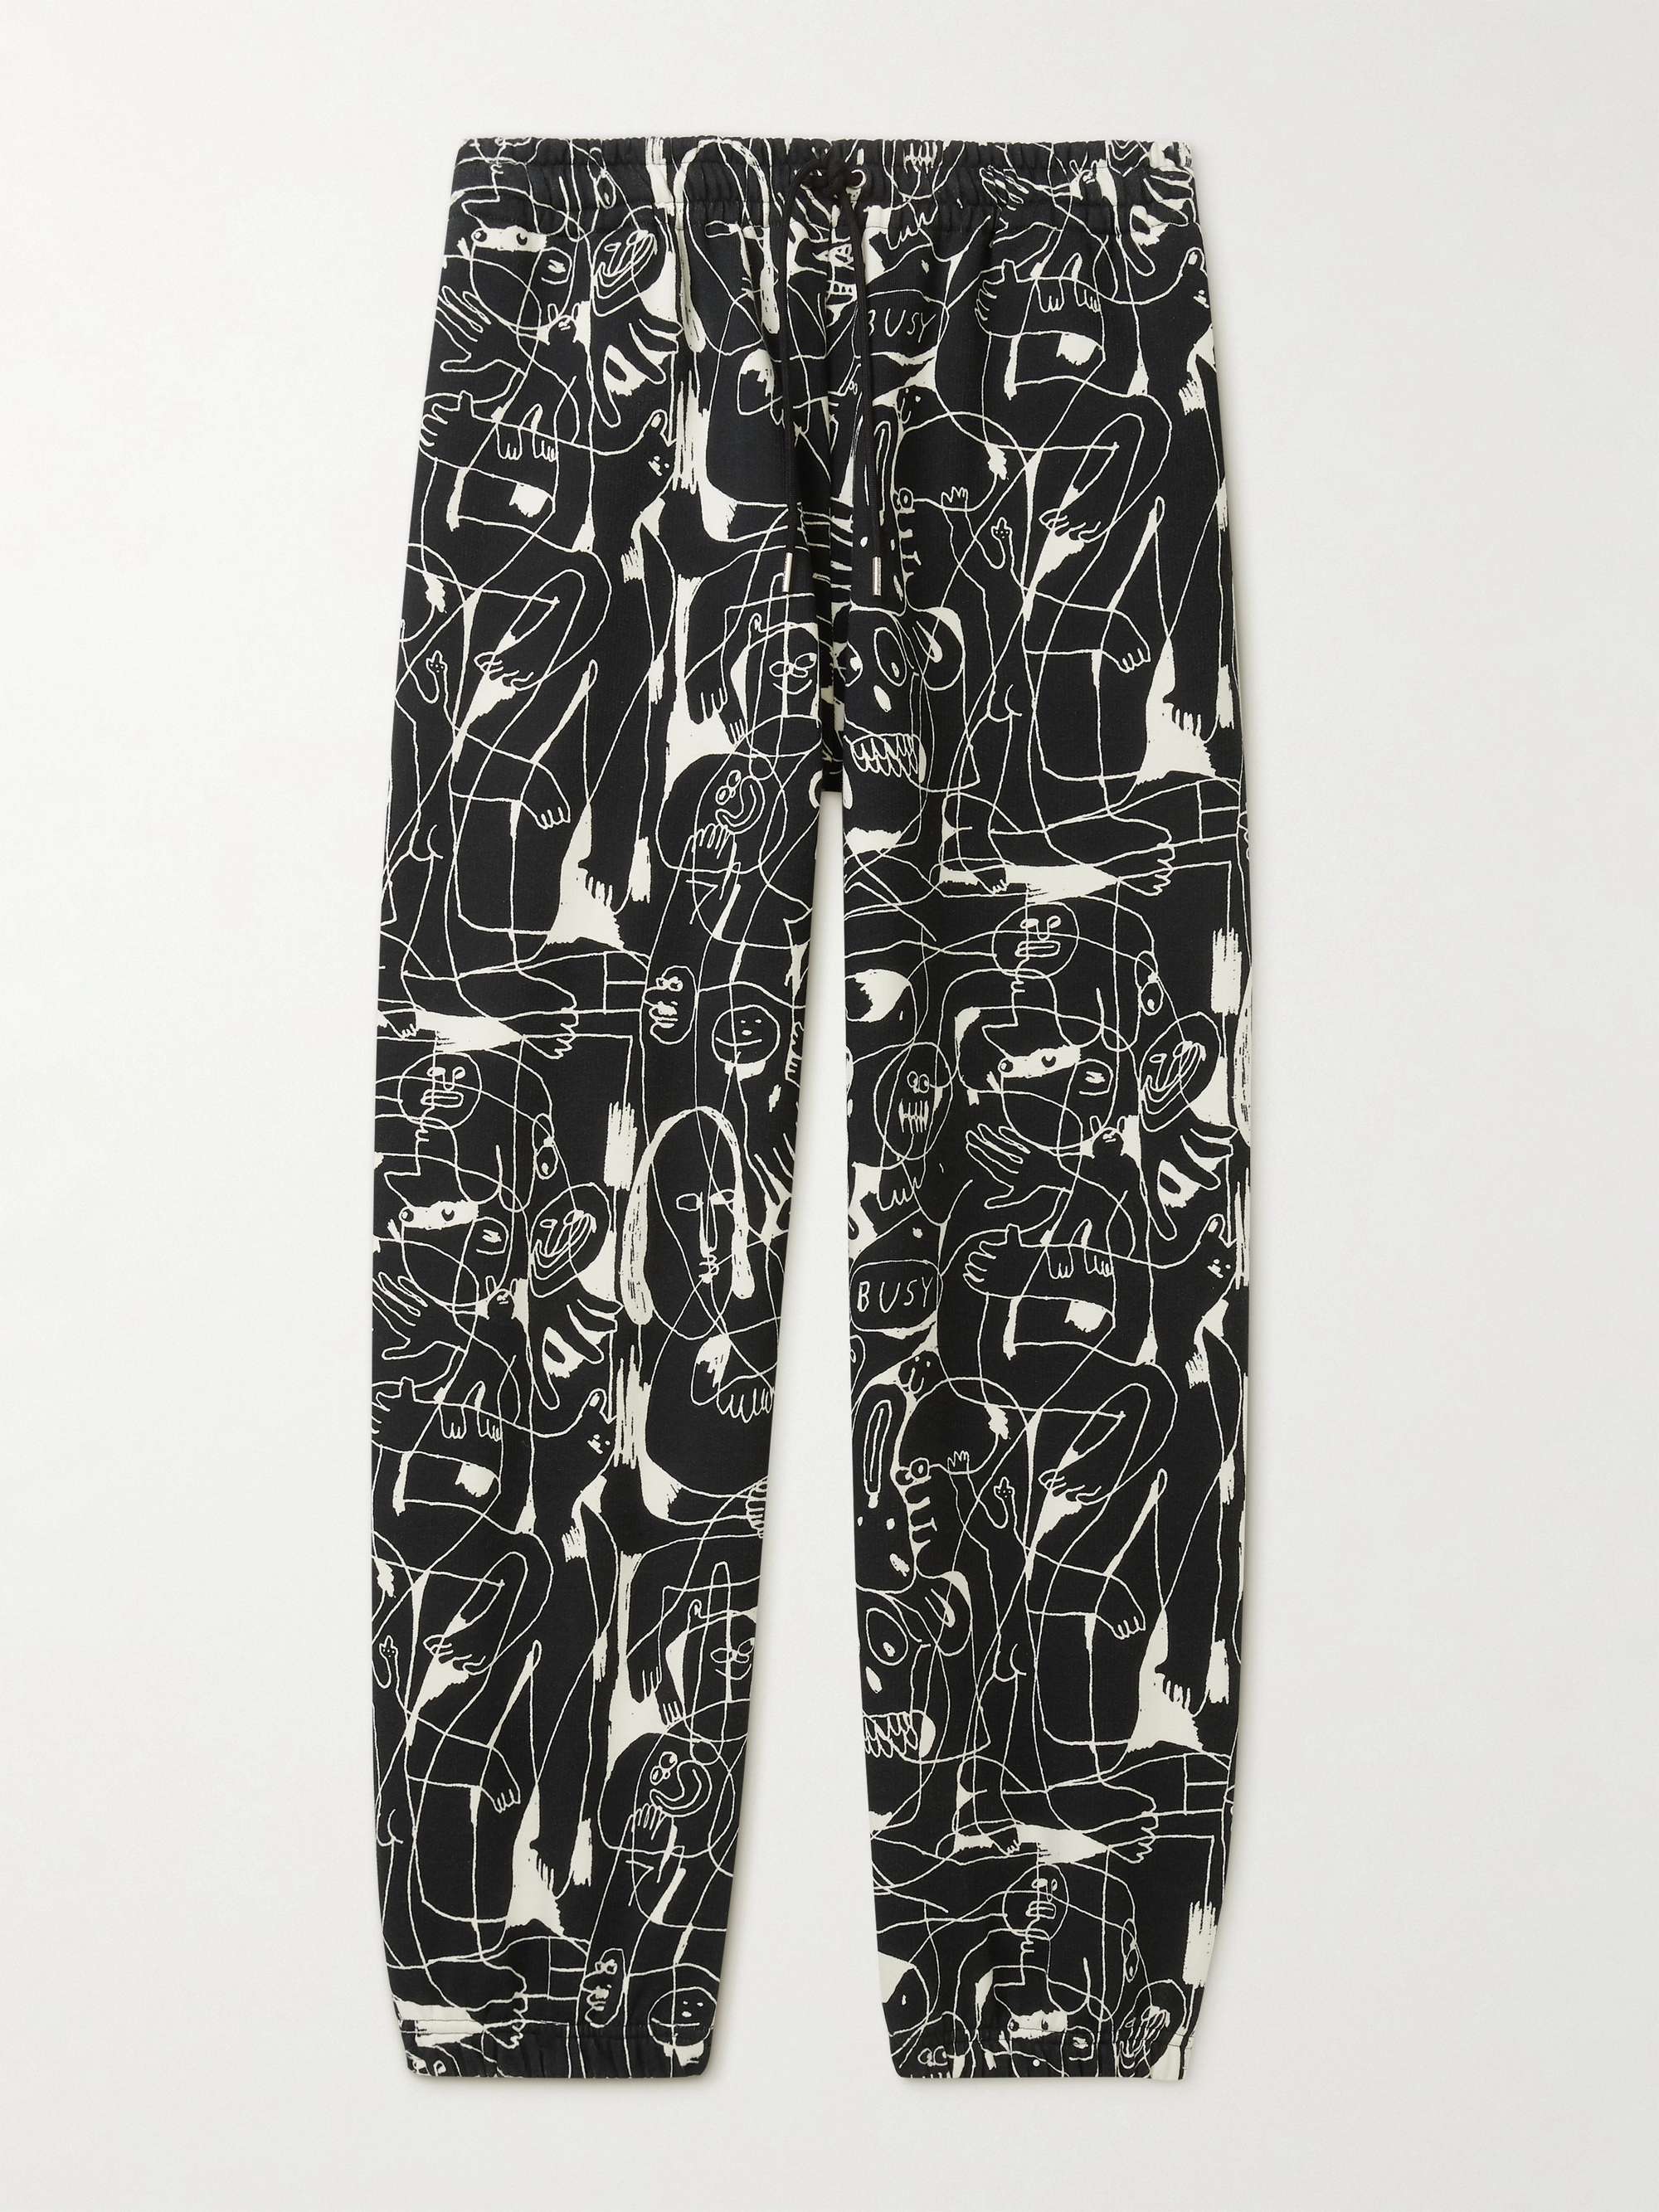 셀린느 옴므 스웻팬츠 CELINE HOMME Tapered Printed Cotton-Jersey Sweatpants,Black